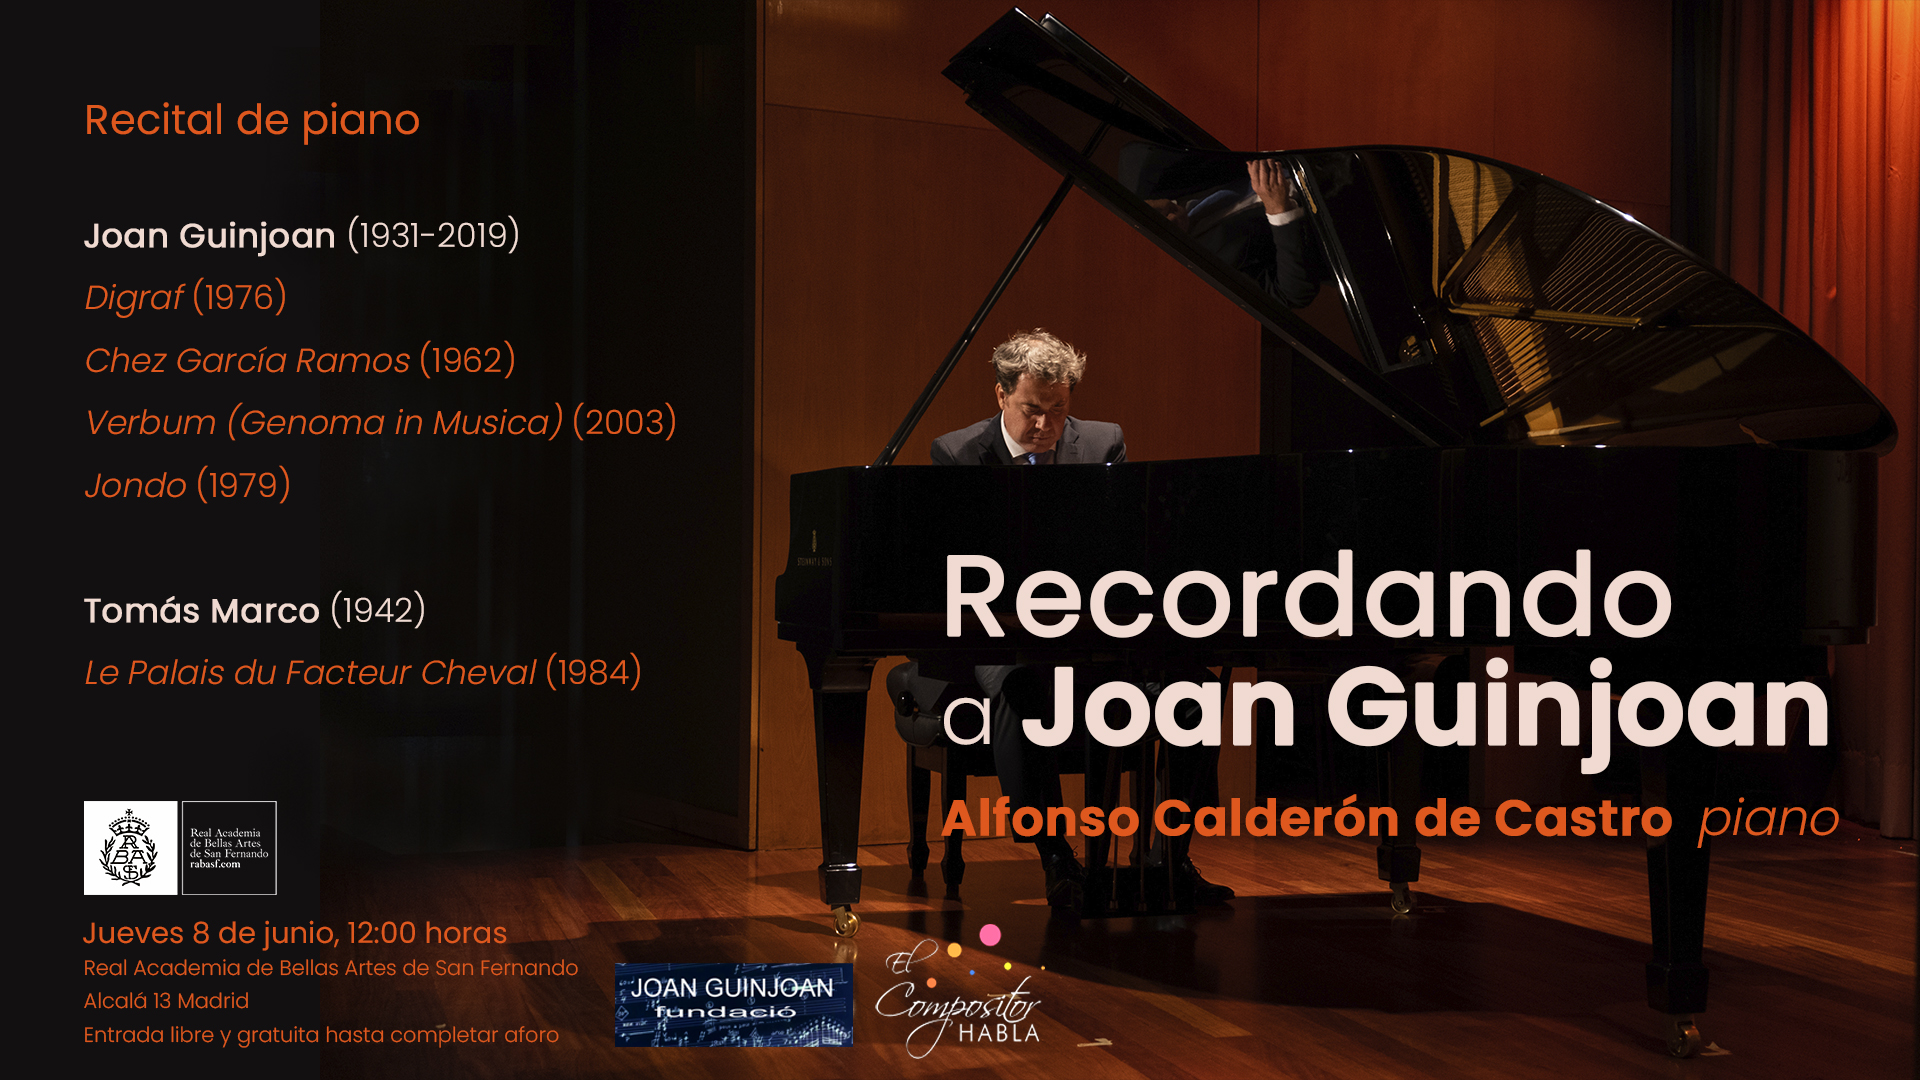 Recital de piano “Recordant Joan Guinjoan” a Madrid